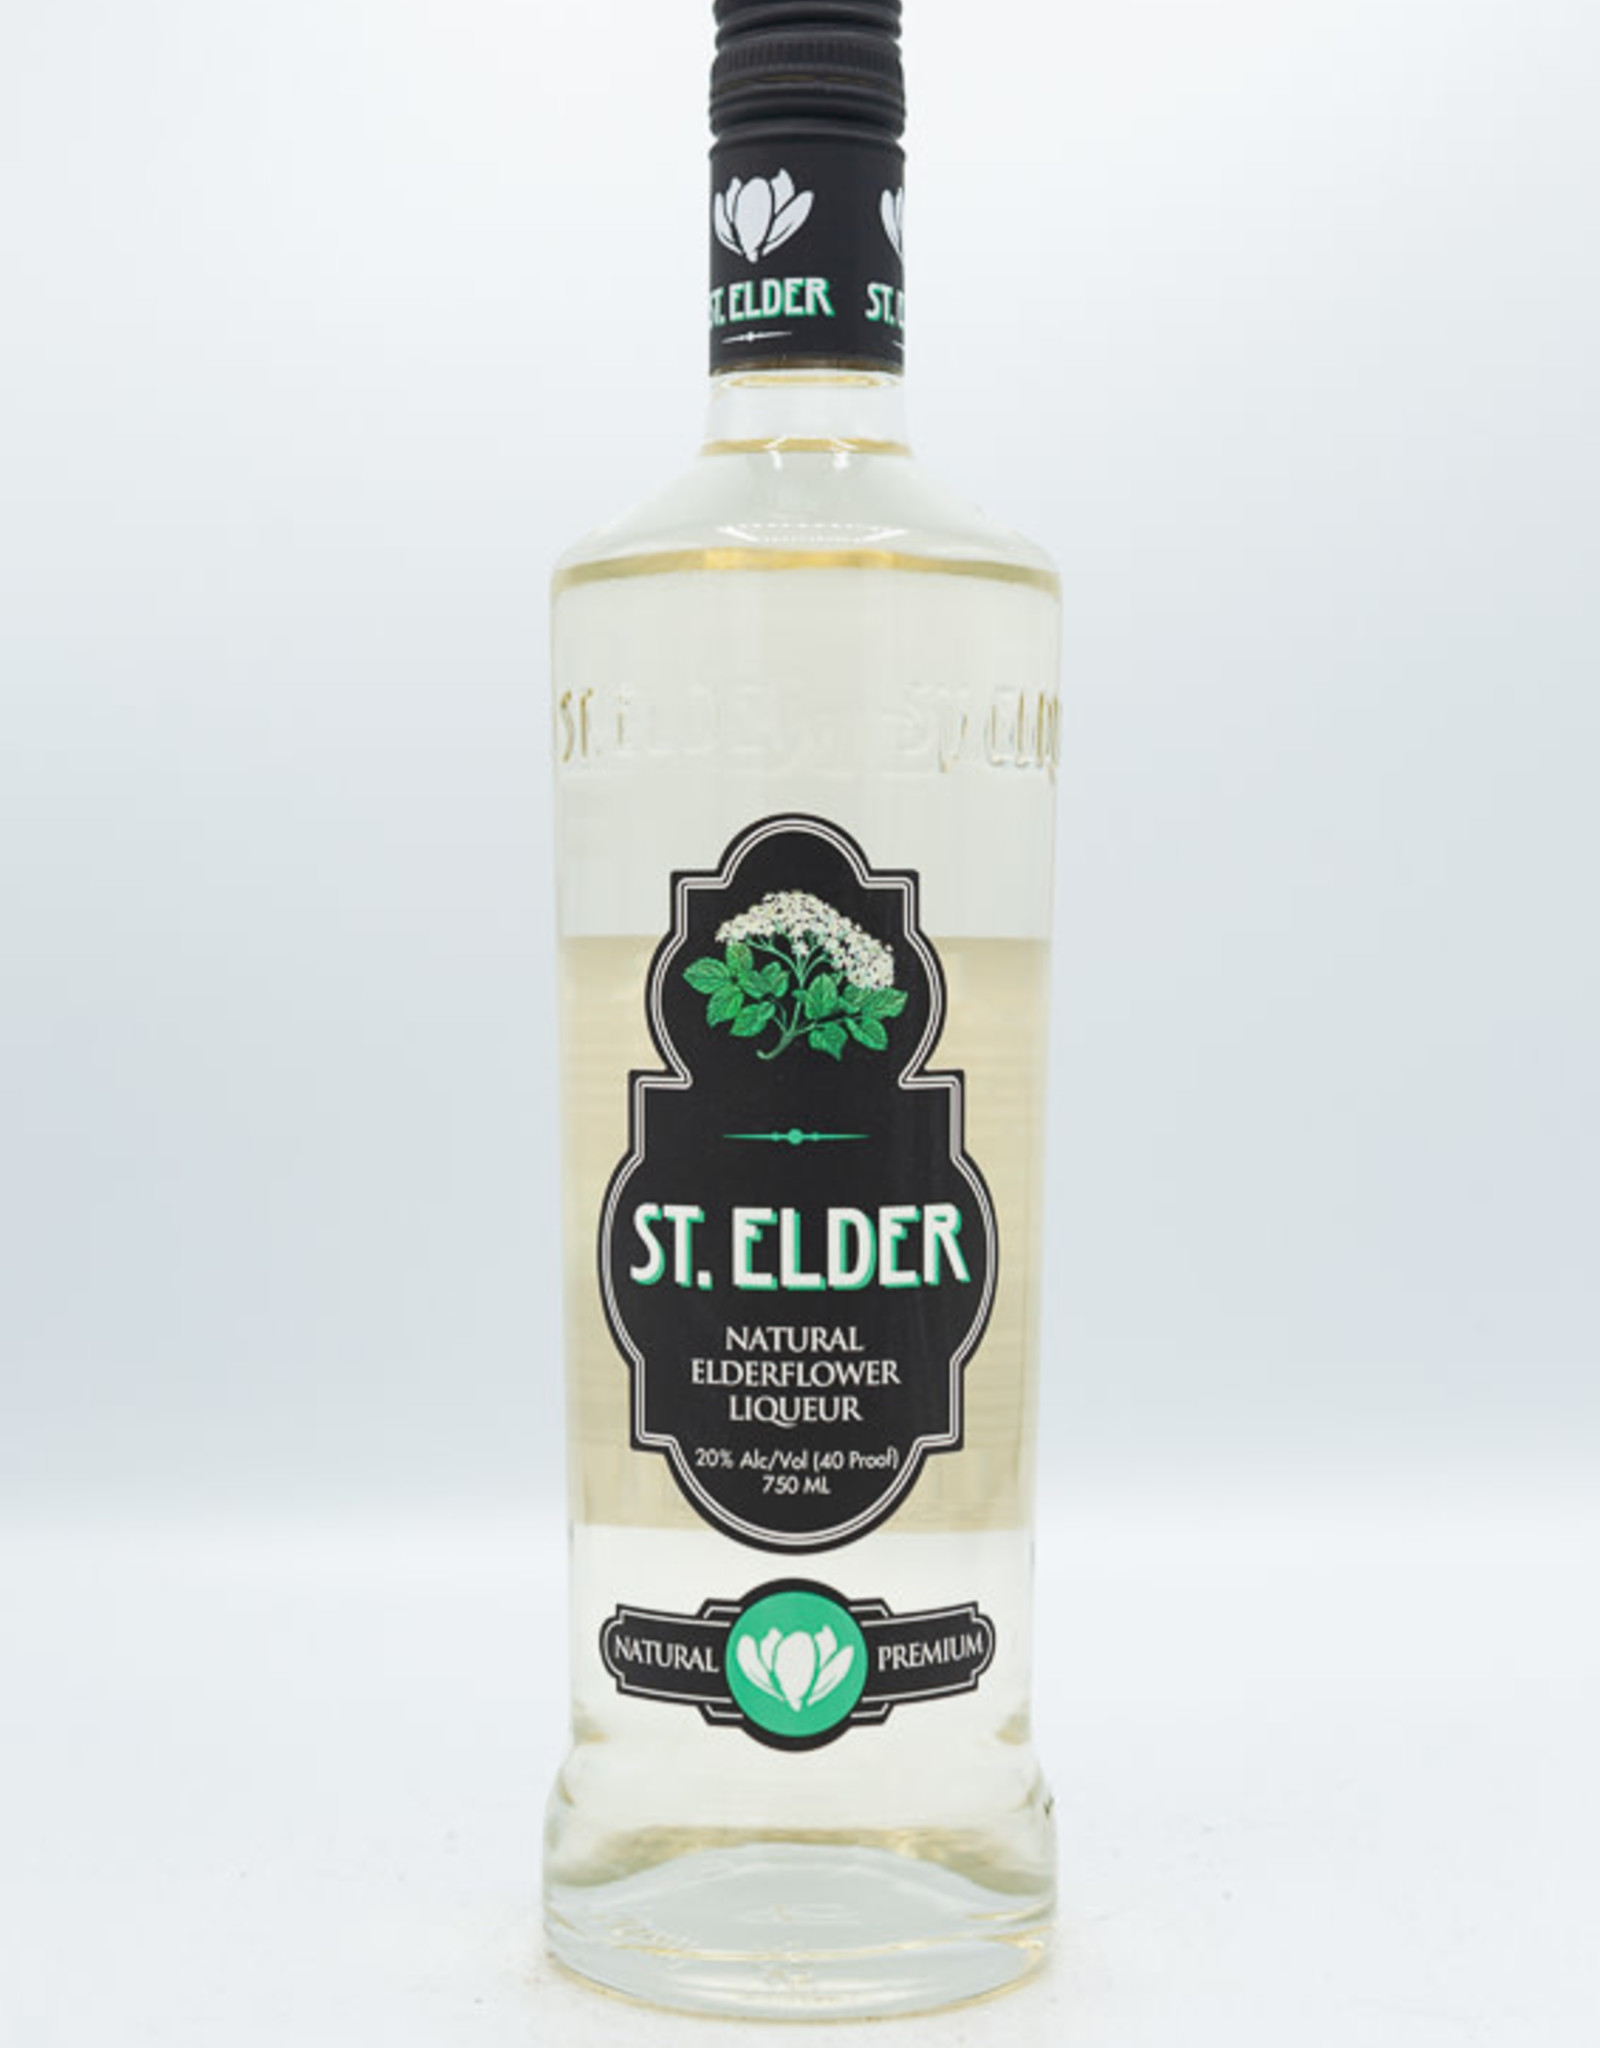 St. Elder St. Elder Elderflower Liqueur